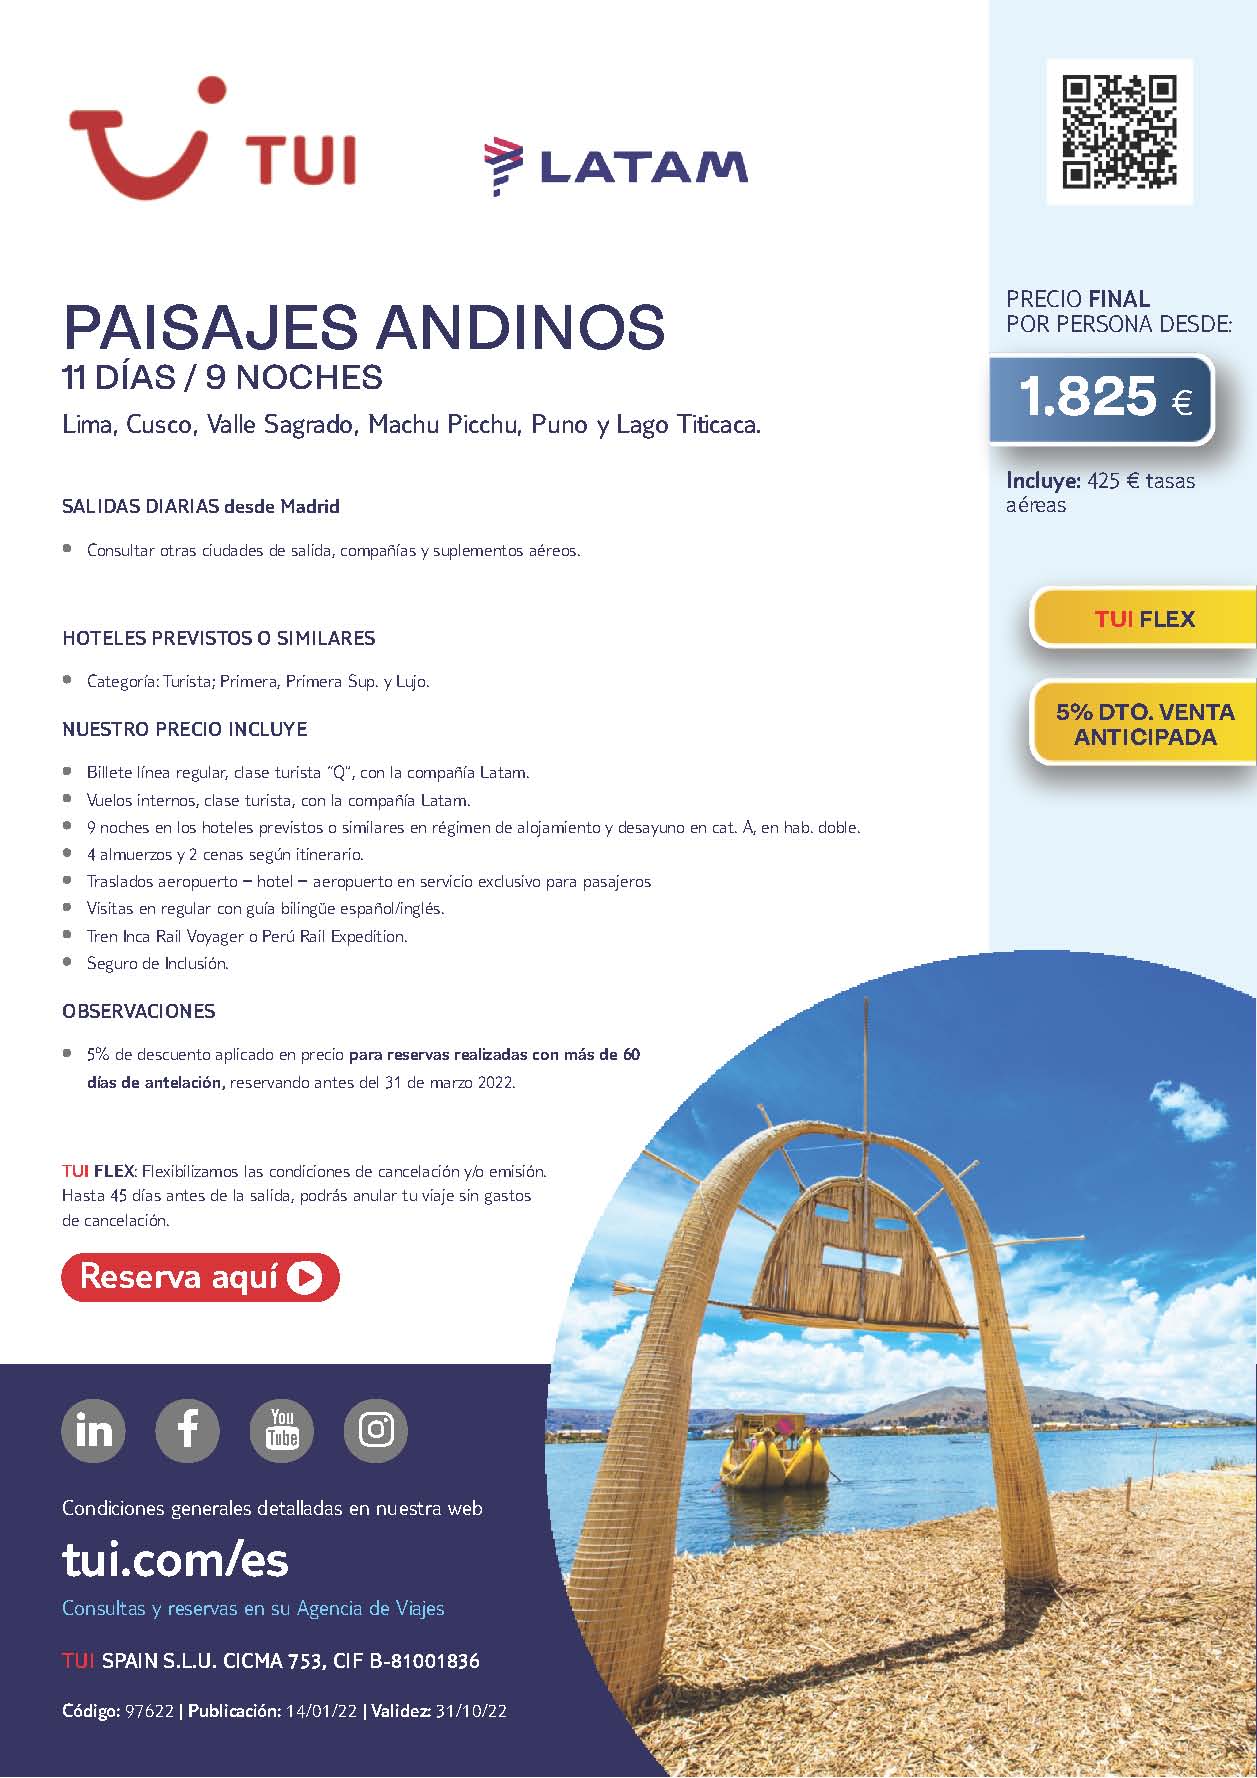 Oferta TUI Peru Paisajes Andinos 11 dias 2022 salidas desde Madrid vuelos Latam